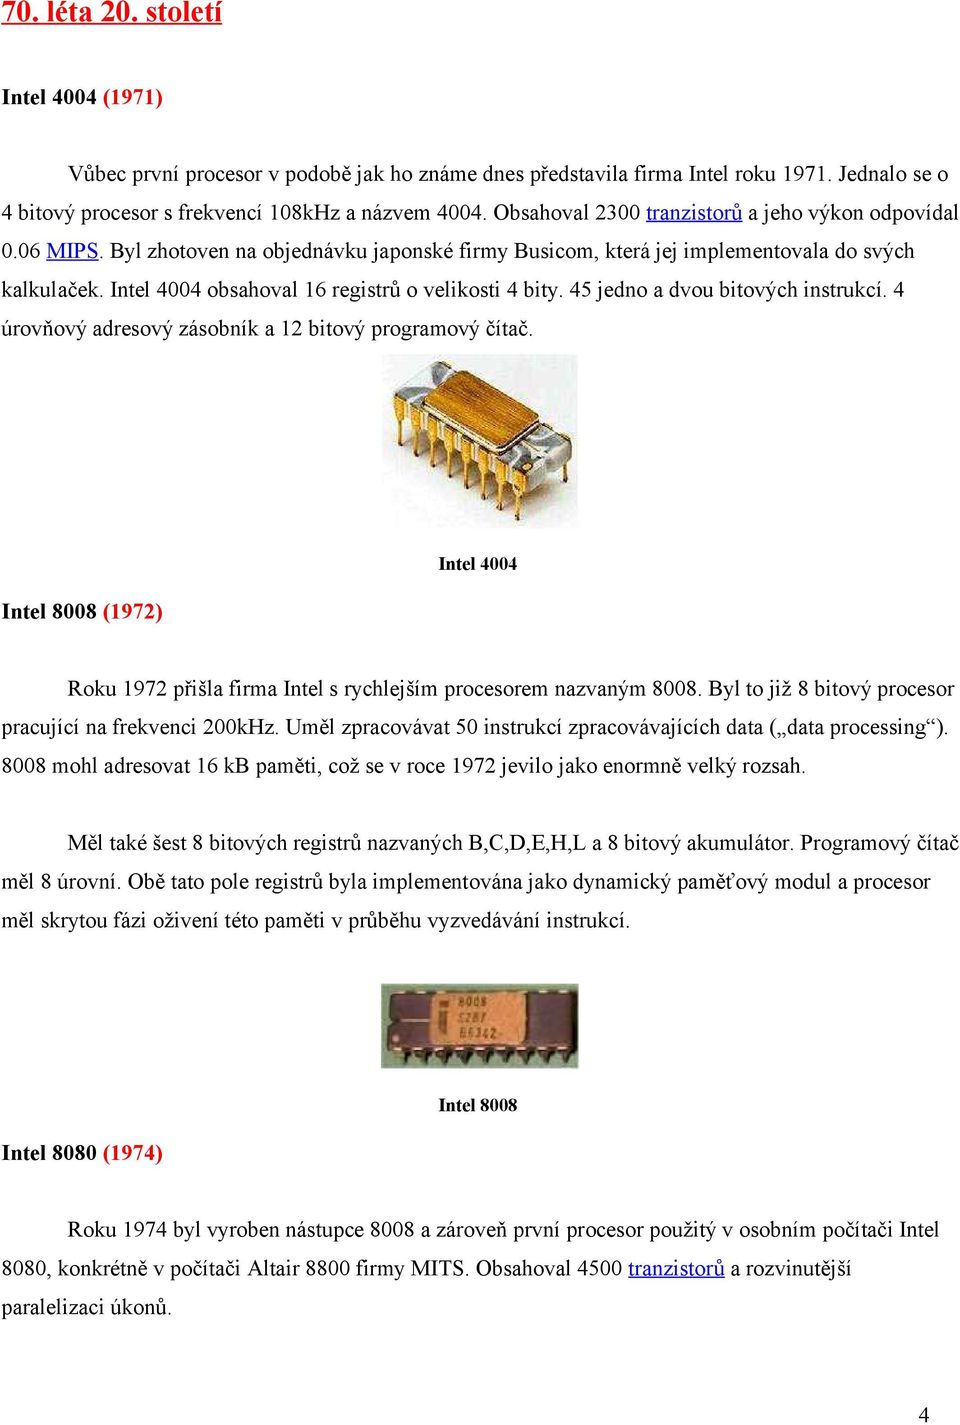 Intel 4004 obsahoval 16 registrů o velikosti 4 bity. 45 jedno a dvou bitových instrukcí. 4 úrovňový adresový zásobník a 12 bitový programový čítač.